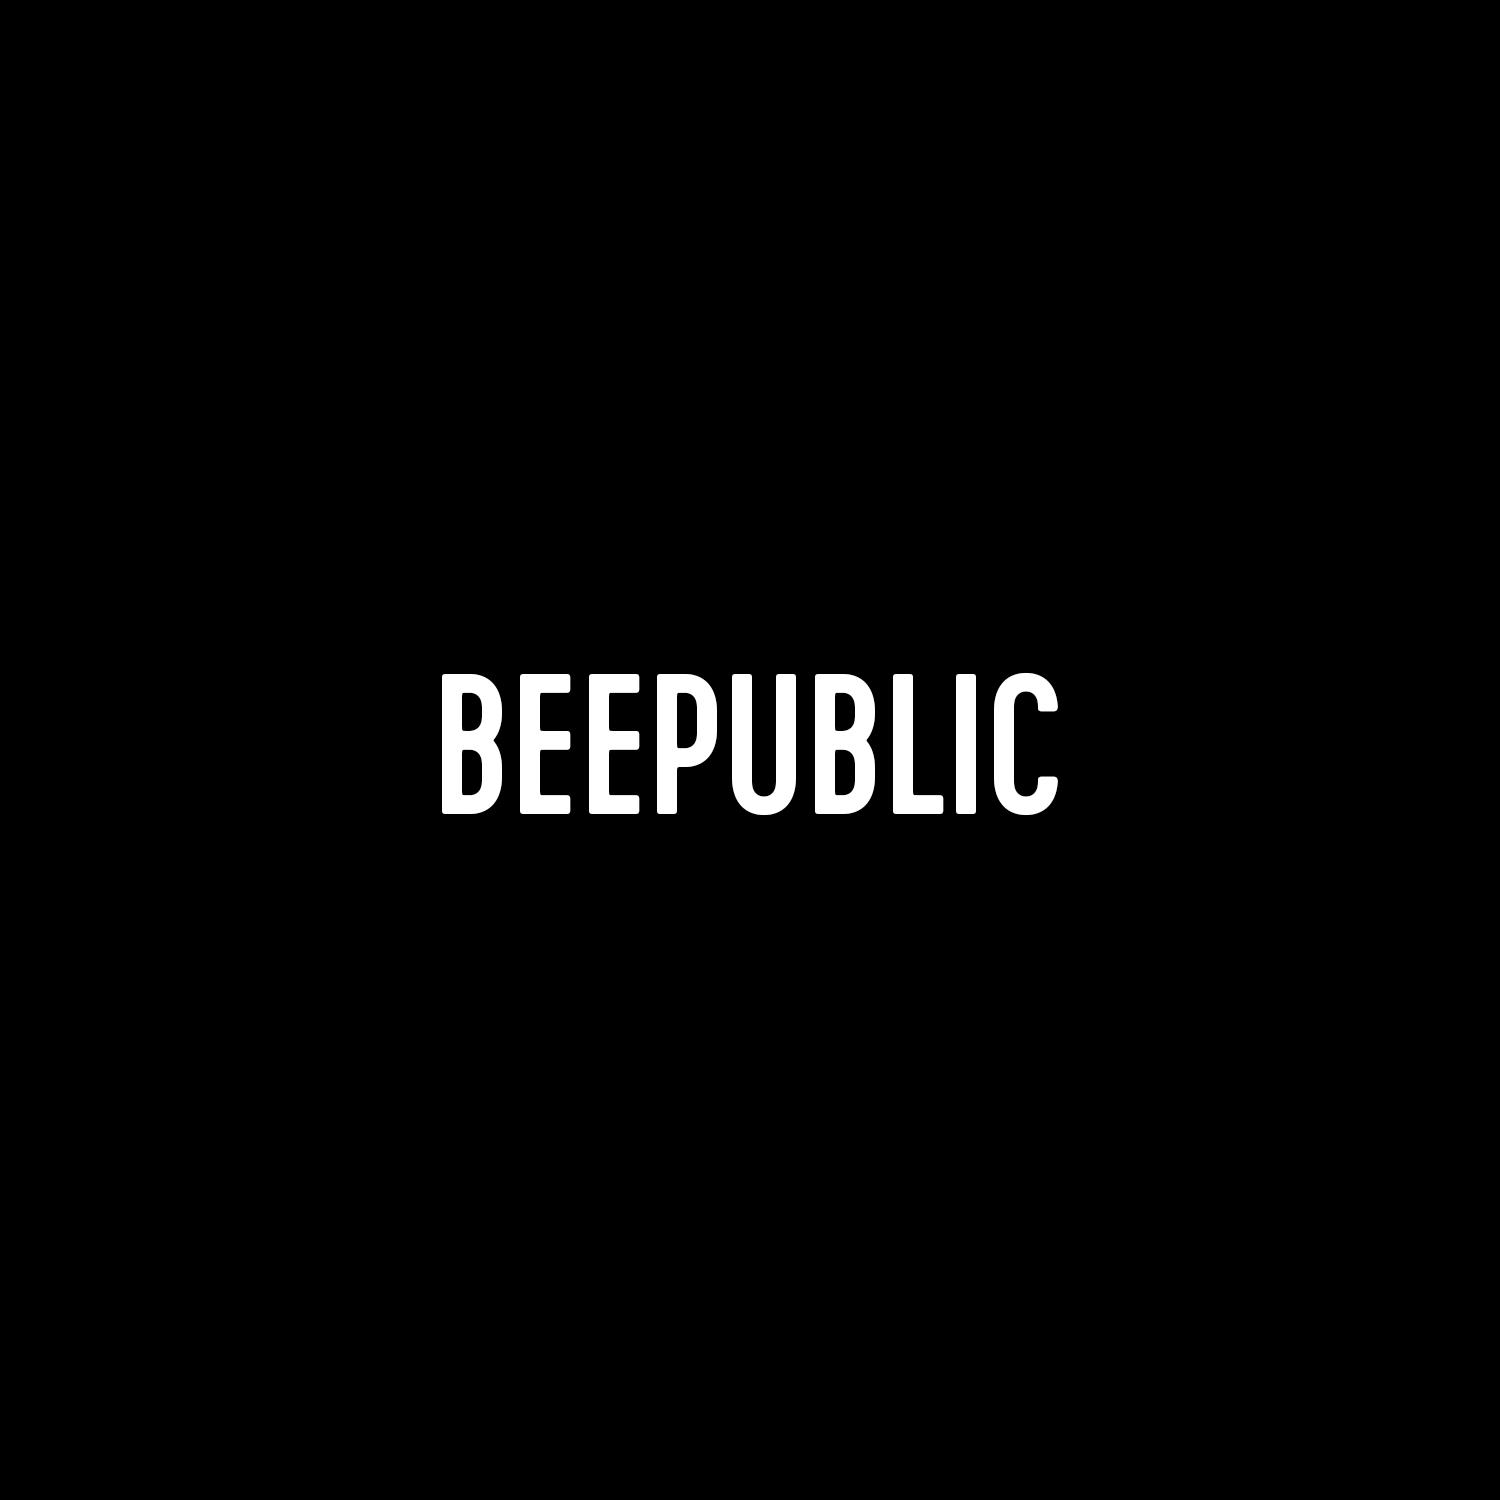 Beepublic Brooklyn